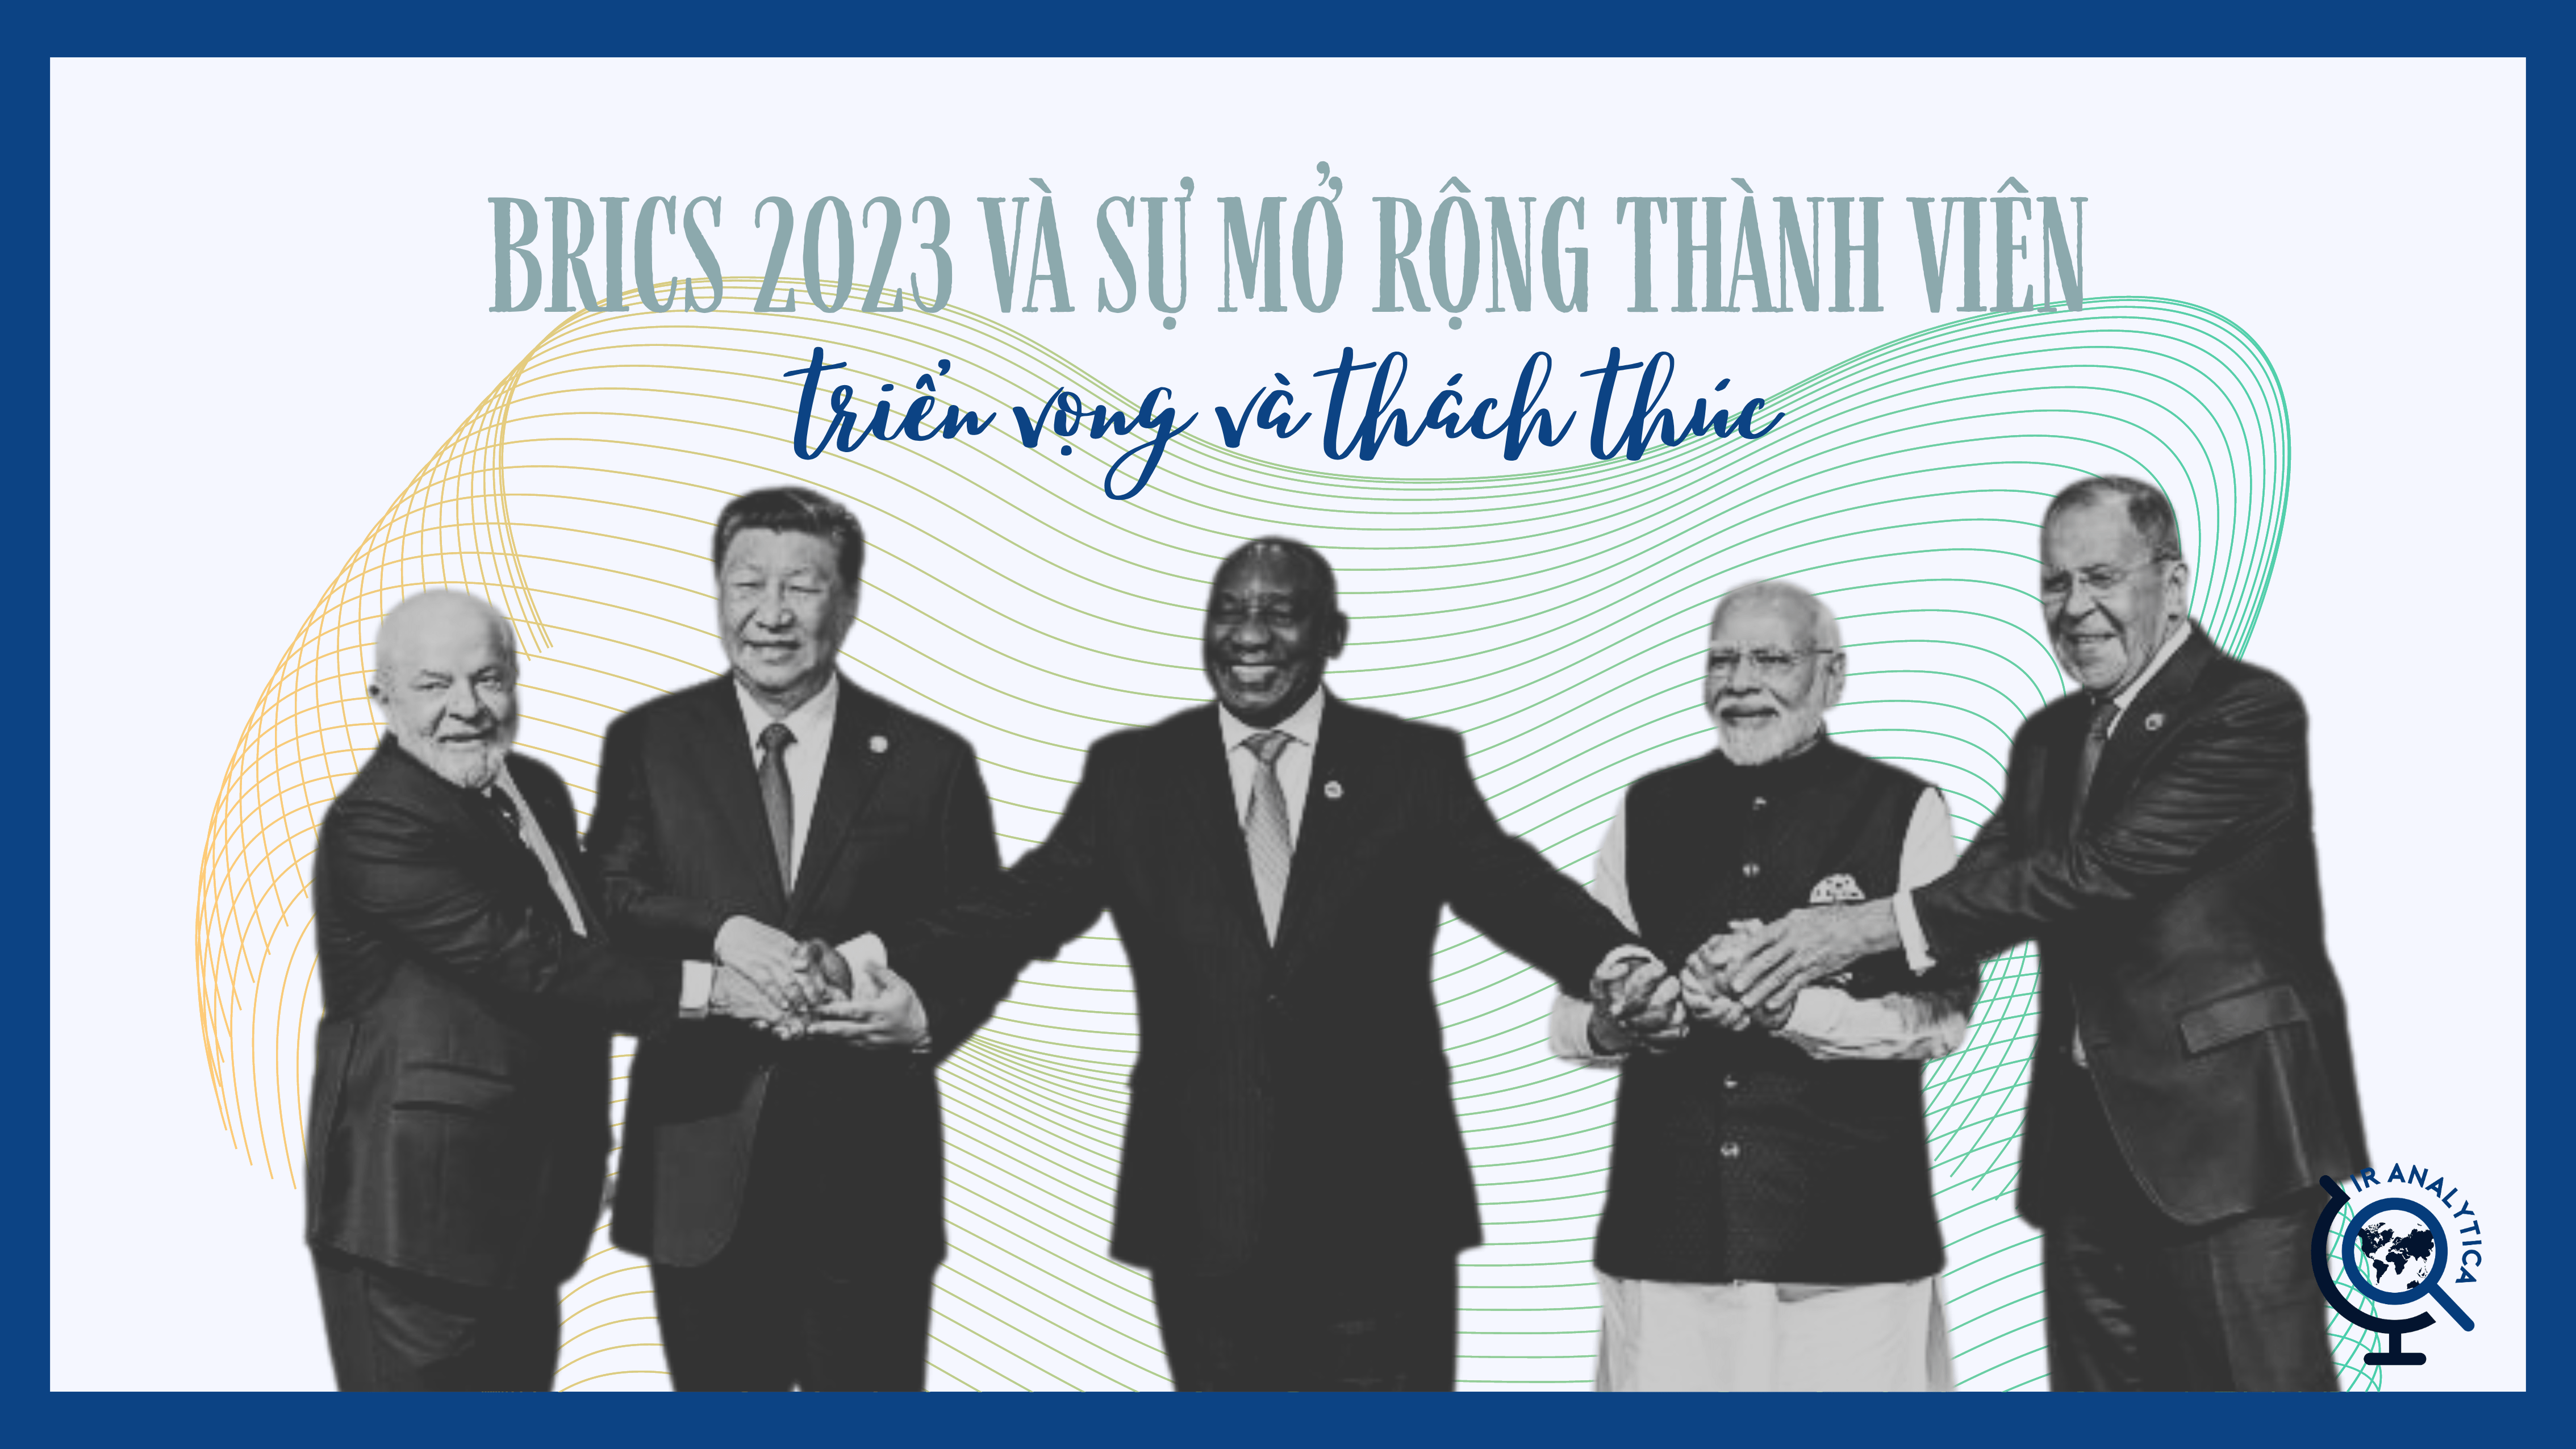 BRICS 2023 mở rộng thành viên